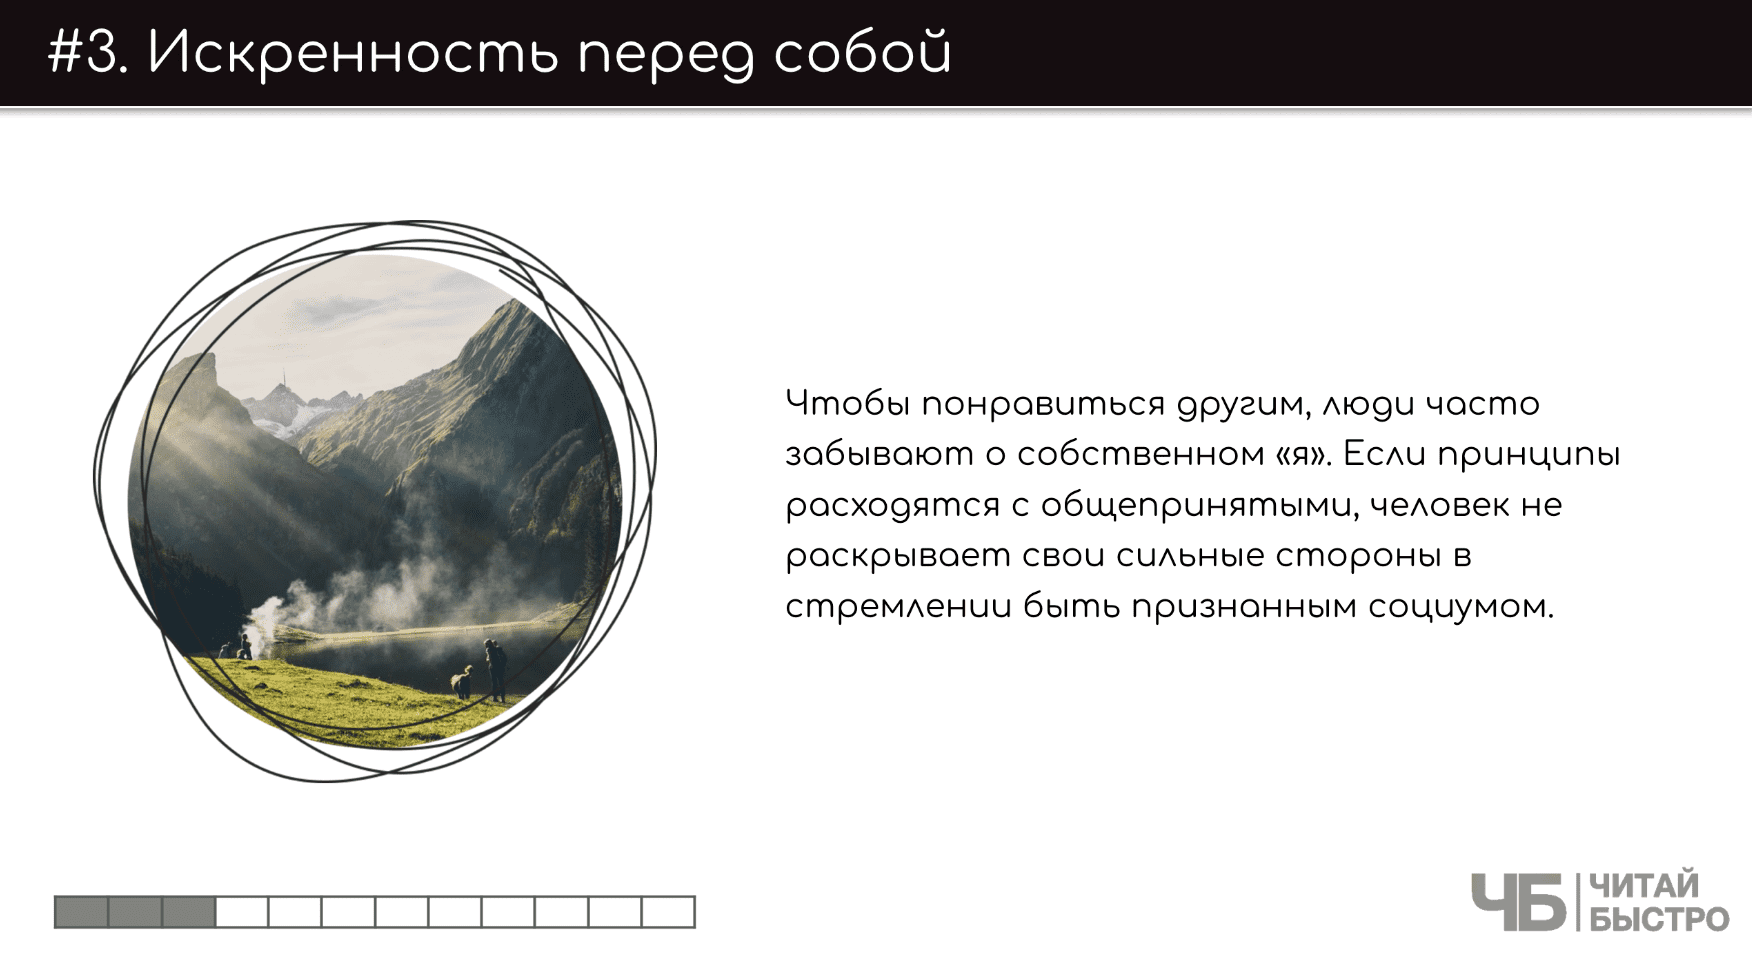 На этом слайде изображен тезис о искренности перед собой и иллюстрация гор.